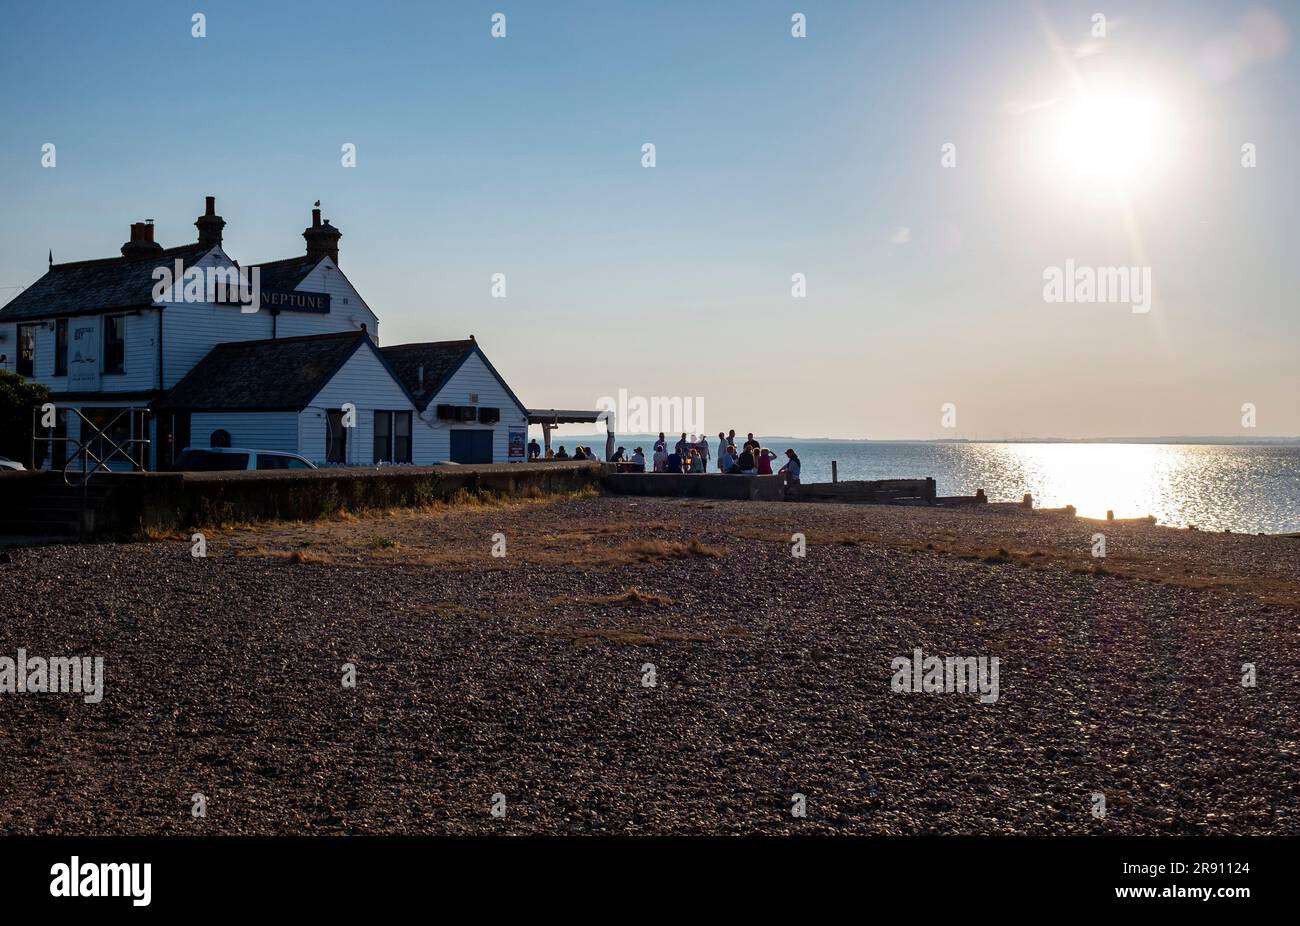 Whitstable North Kent , Angleterre Royaume-Uni - les visiteurs qui apprécient un verre devant le célèbre pub Old Neptune sur le front de mer sous le soleil d'été Banque D'Images